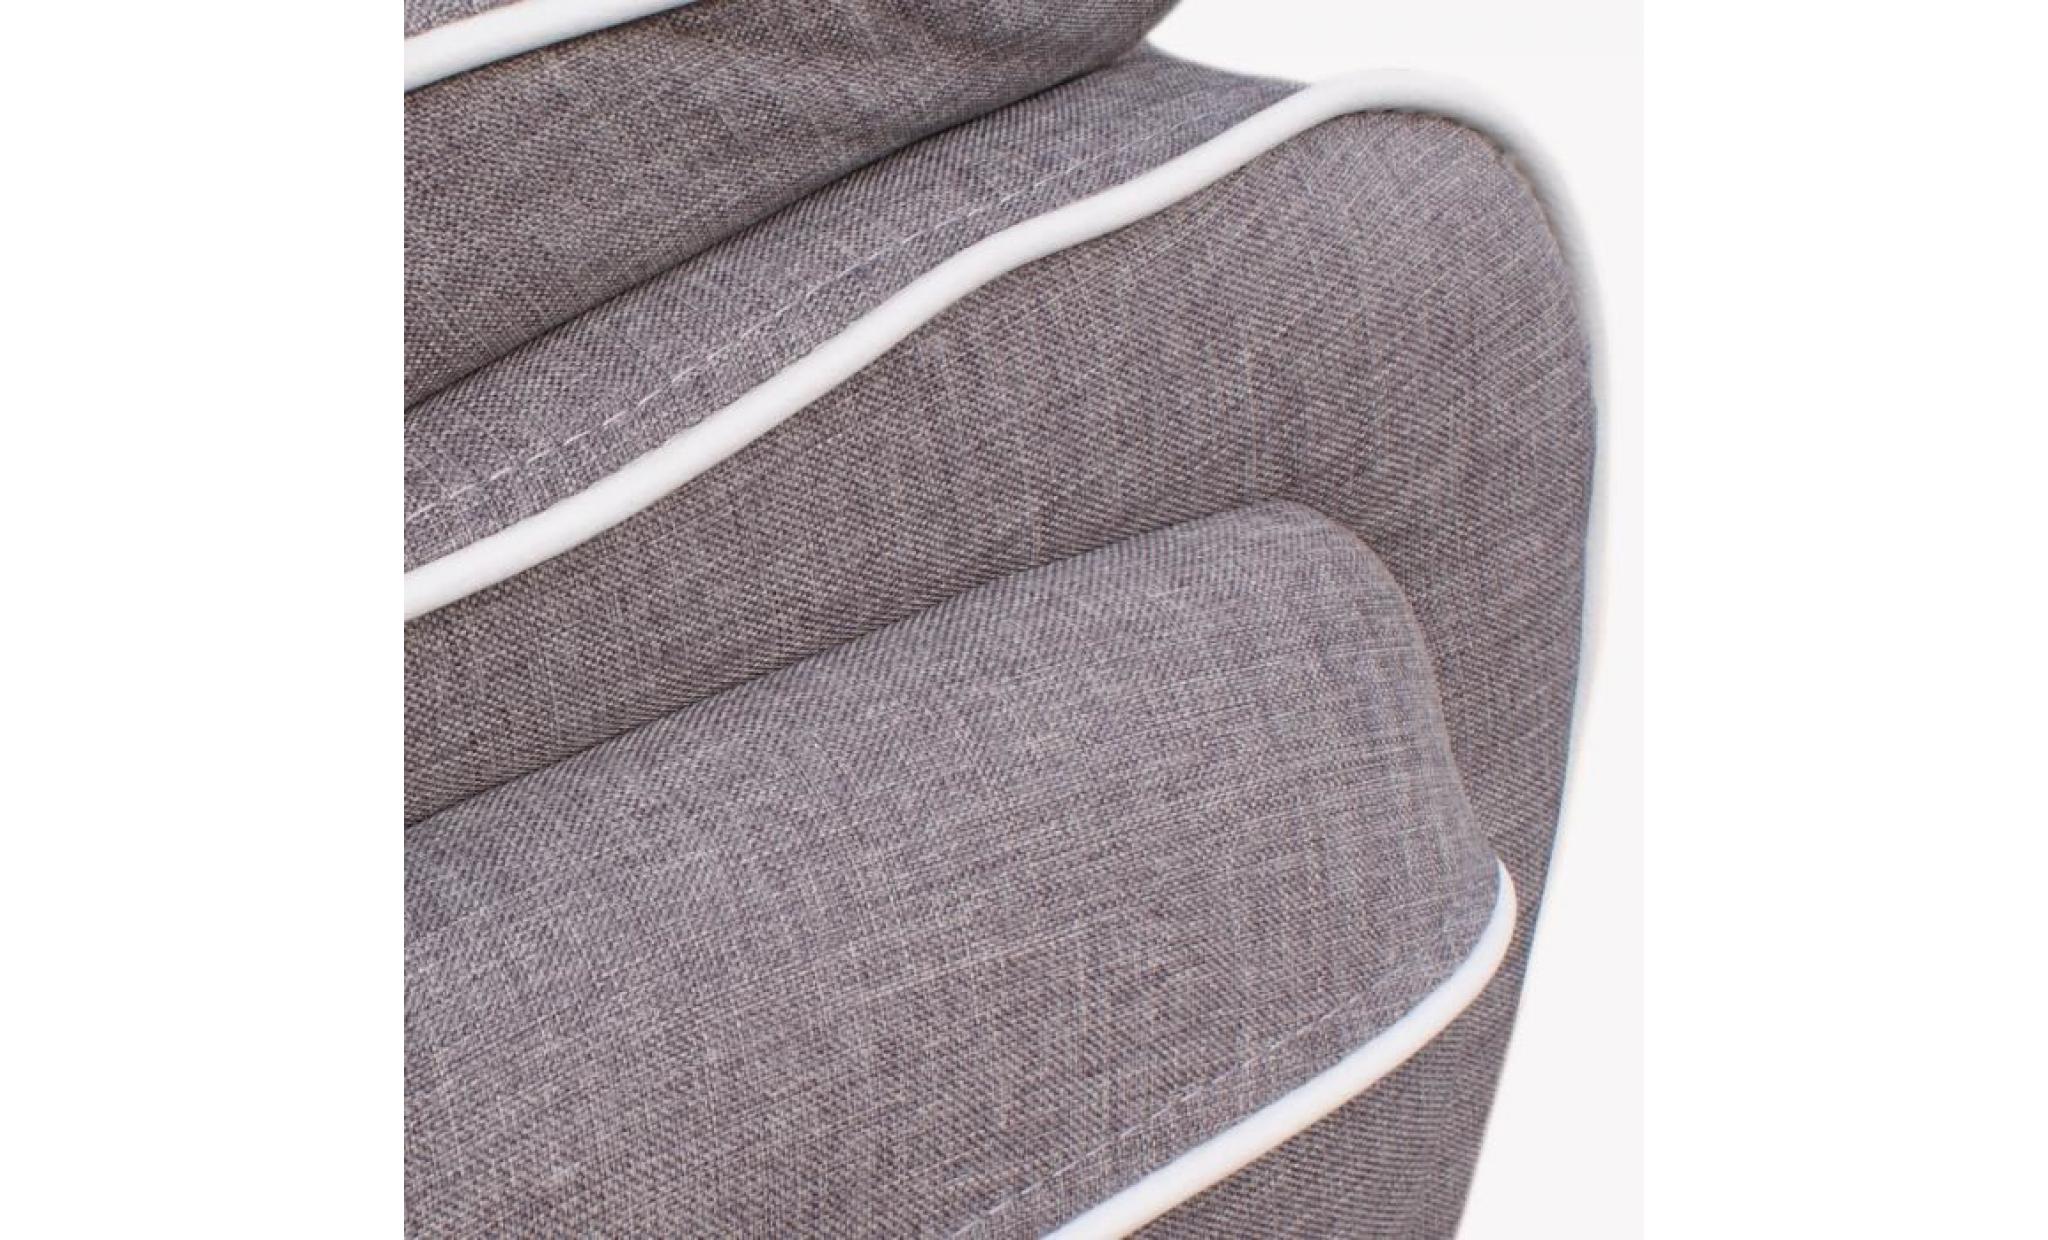 spacio canapé droit fixe 3 places   tissu   gris passepoil blanc   contemporain   l 194 x p 86 cm pas cher